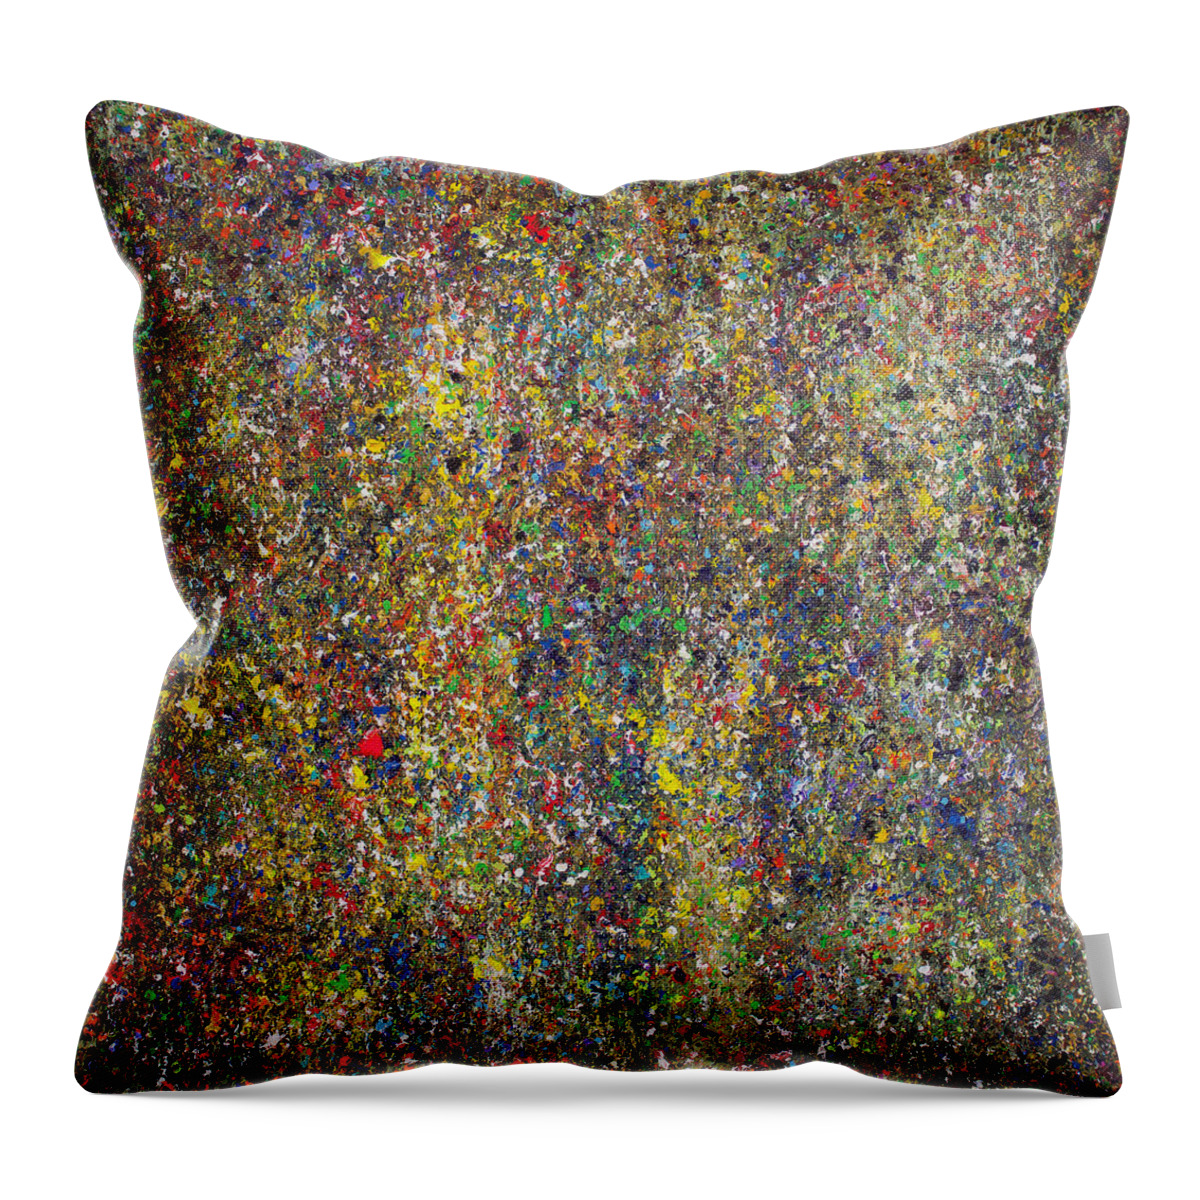 Derek Kaplan Art Throw Pillow featuring the painting Opt.34.15 ONLY A DREAM by Derek Kaplan